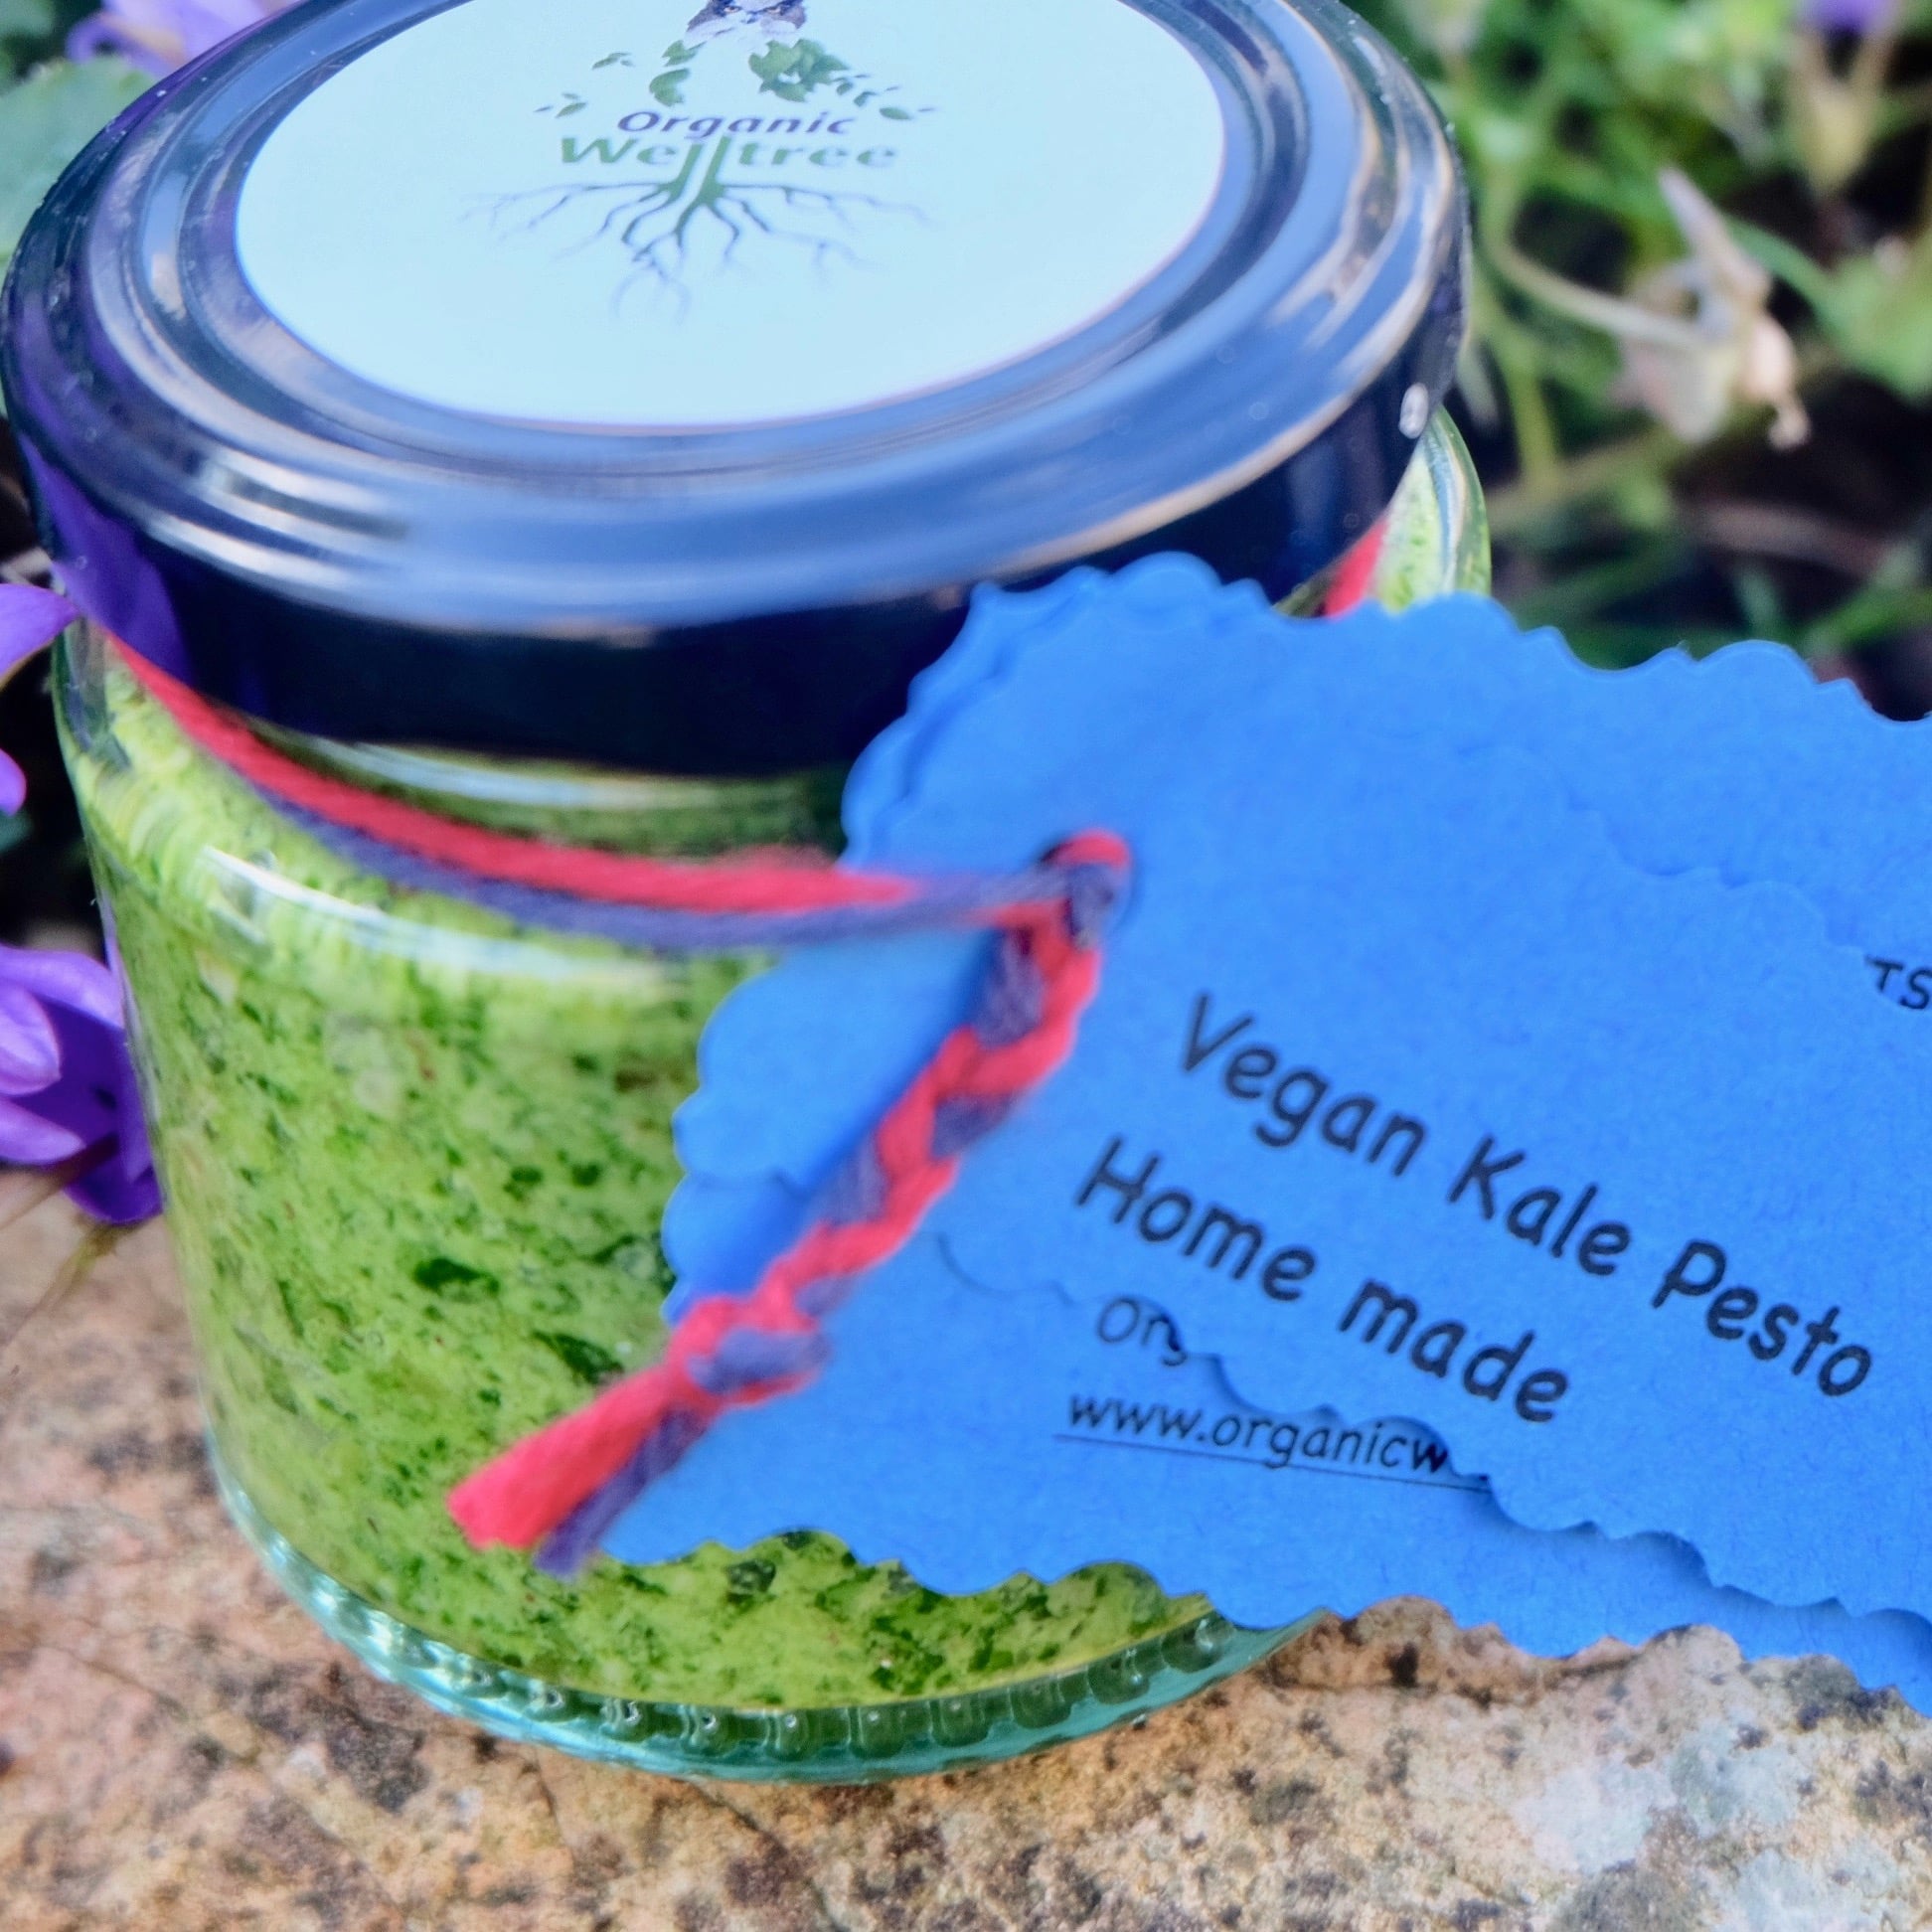 Vegan Kale Pesto (125g)